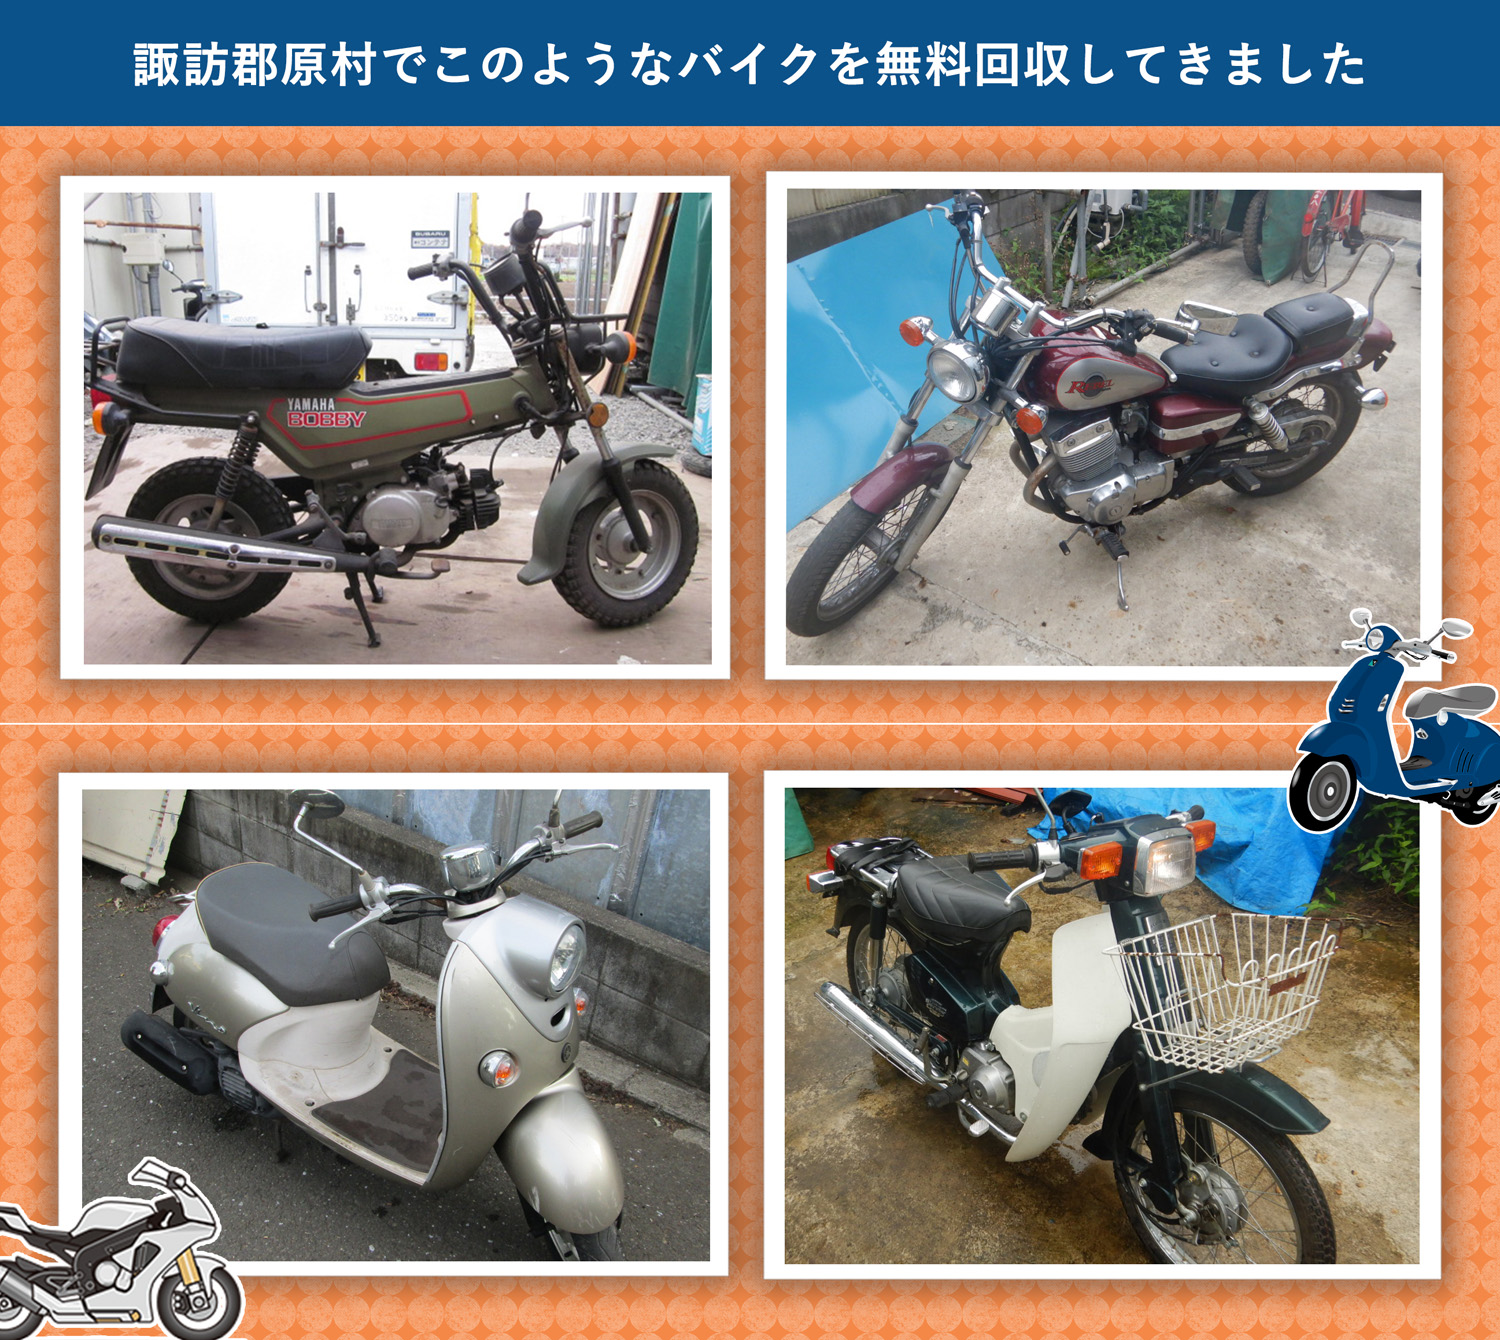 諏訪郡原村でこのようなバイクを無料回収してきました。